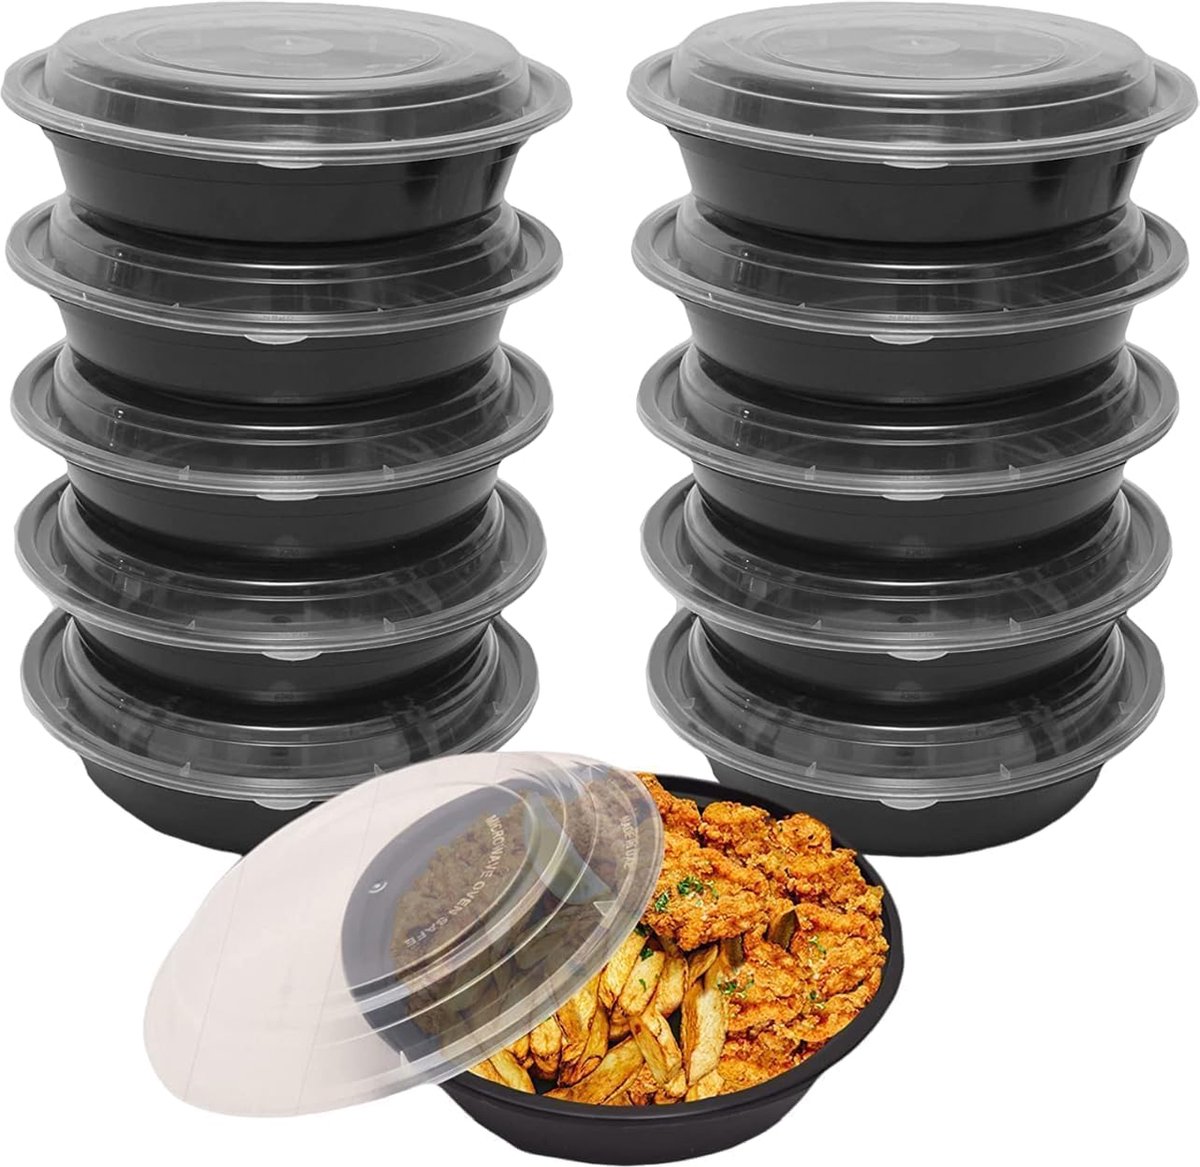 FUZON ronde plastic maaltijdbereidingscontainers - herbruikbare BPA-vrije voedselcontainers met luchtdichte deksels - magnetron-, vriezer- en vaatwasserbestendig (10 stuks per verpakking, 709ML)FUZON ronde plastic maaltijdbereidingscontainers - herbr